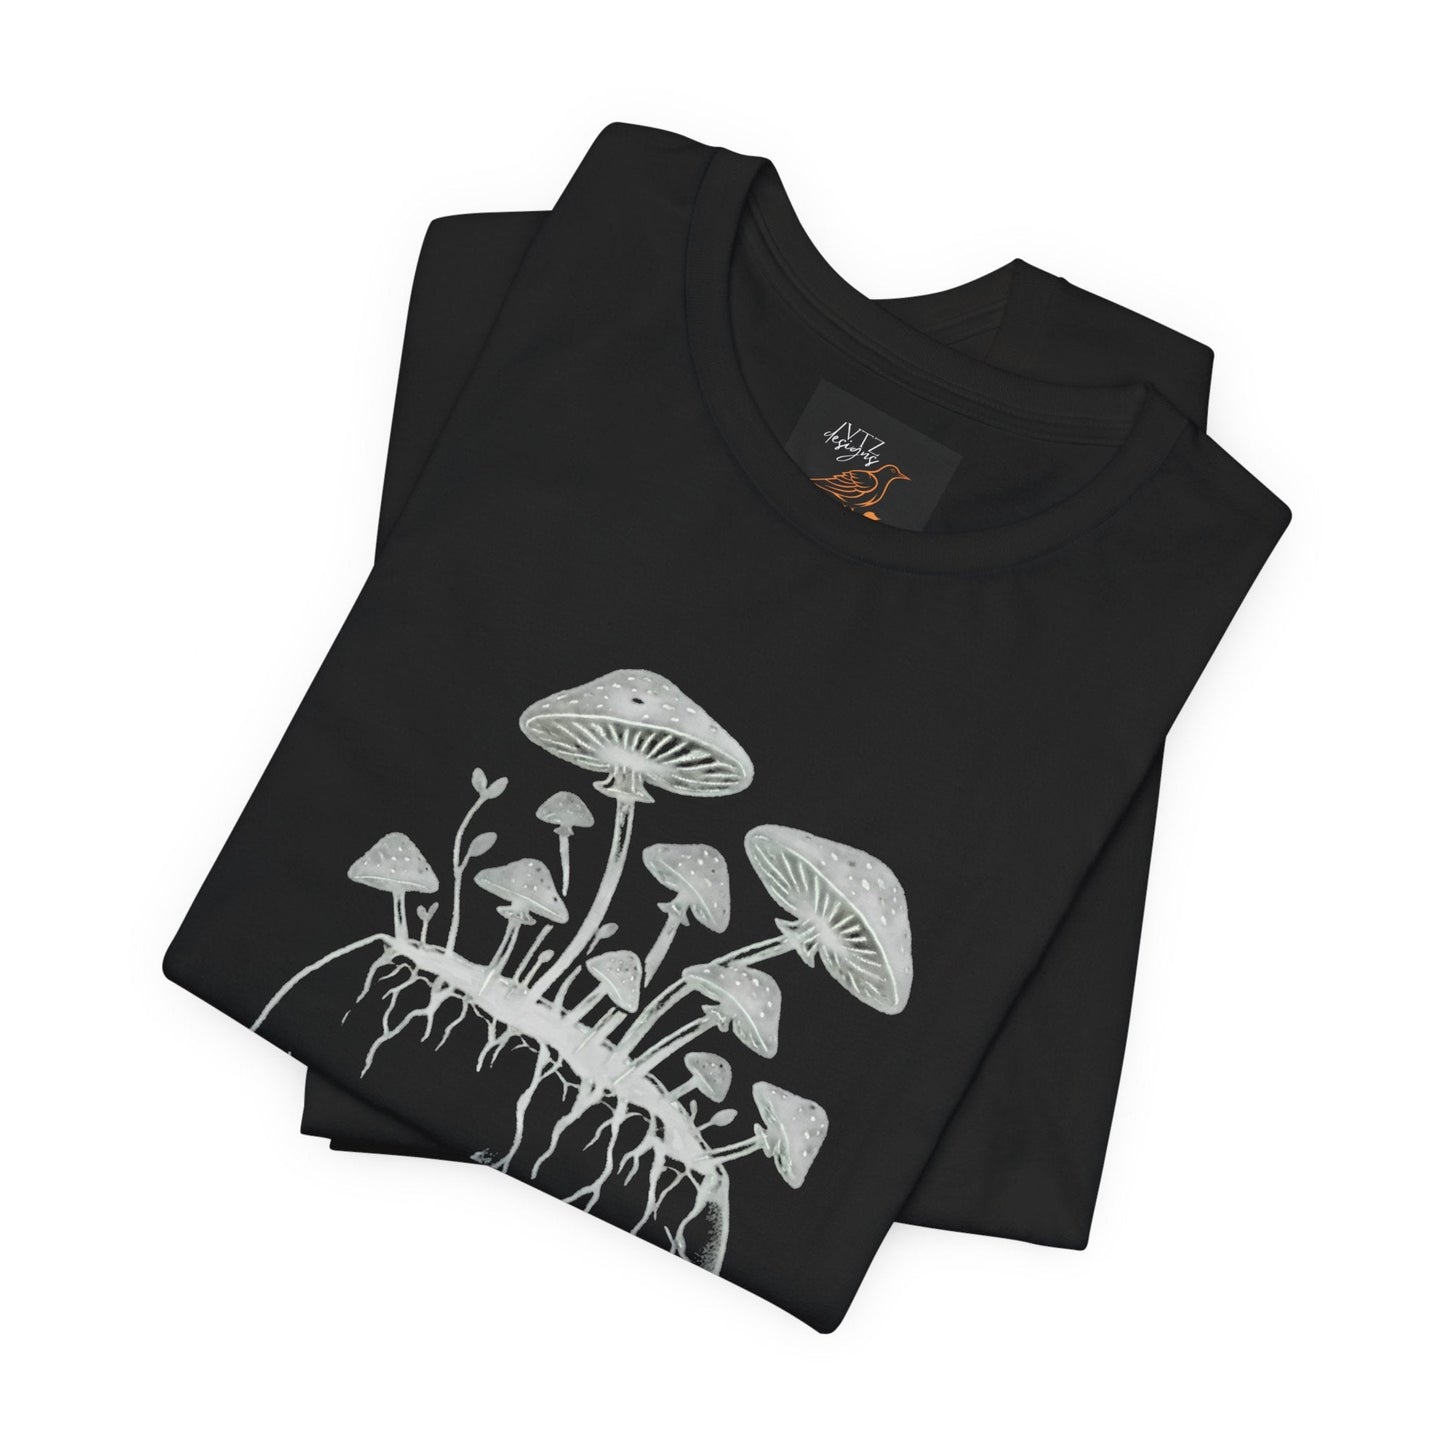 Skull and Mushrooms Tee ShirtT - ShirtVTZdesignsVintage WhiteXSclothingcottage corecottagecore